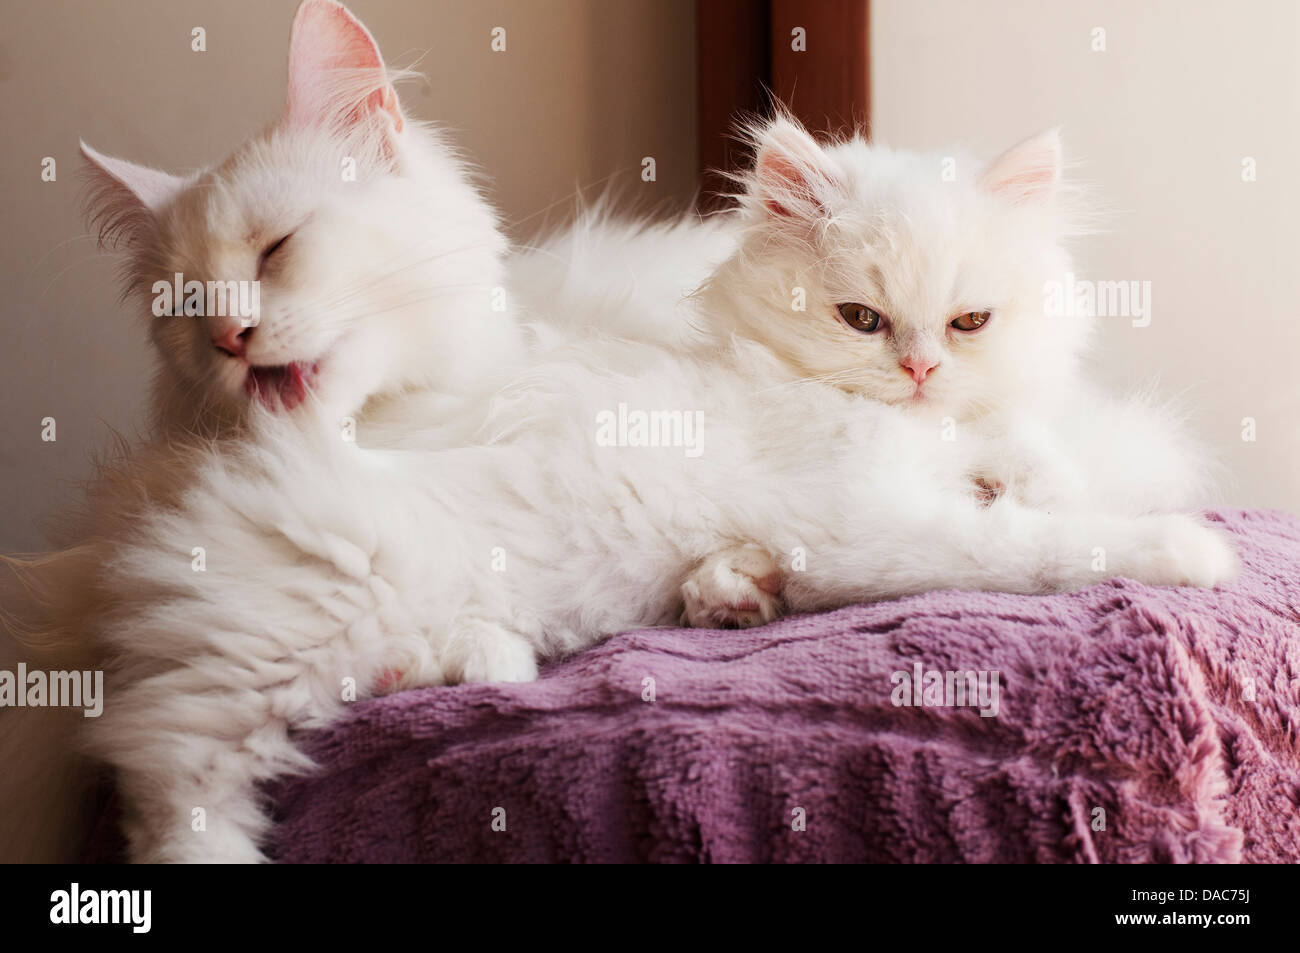 Cat family Stock Photo